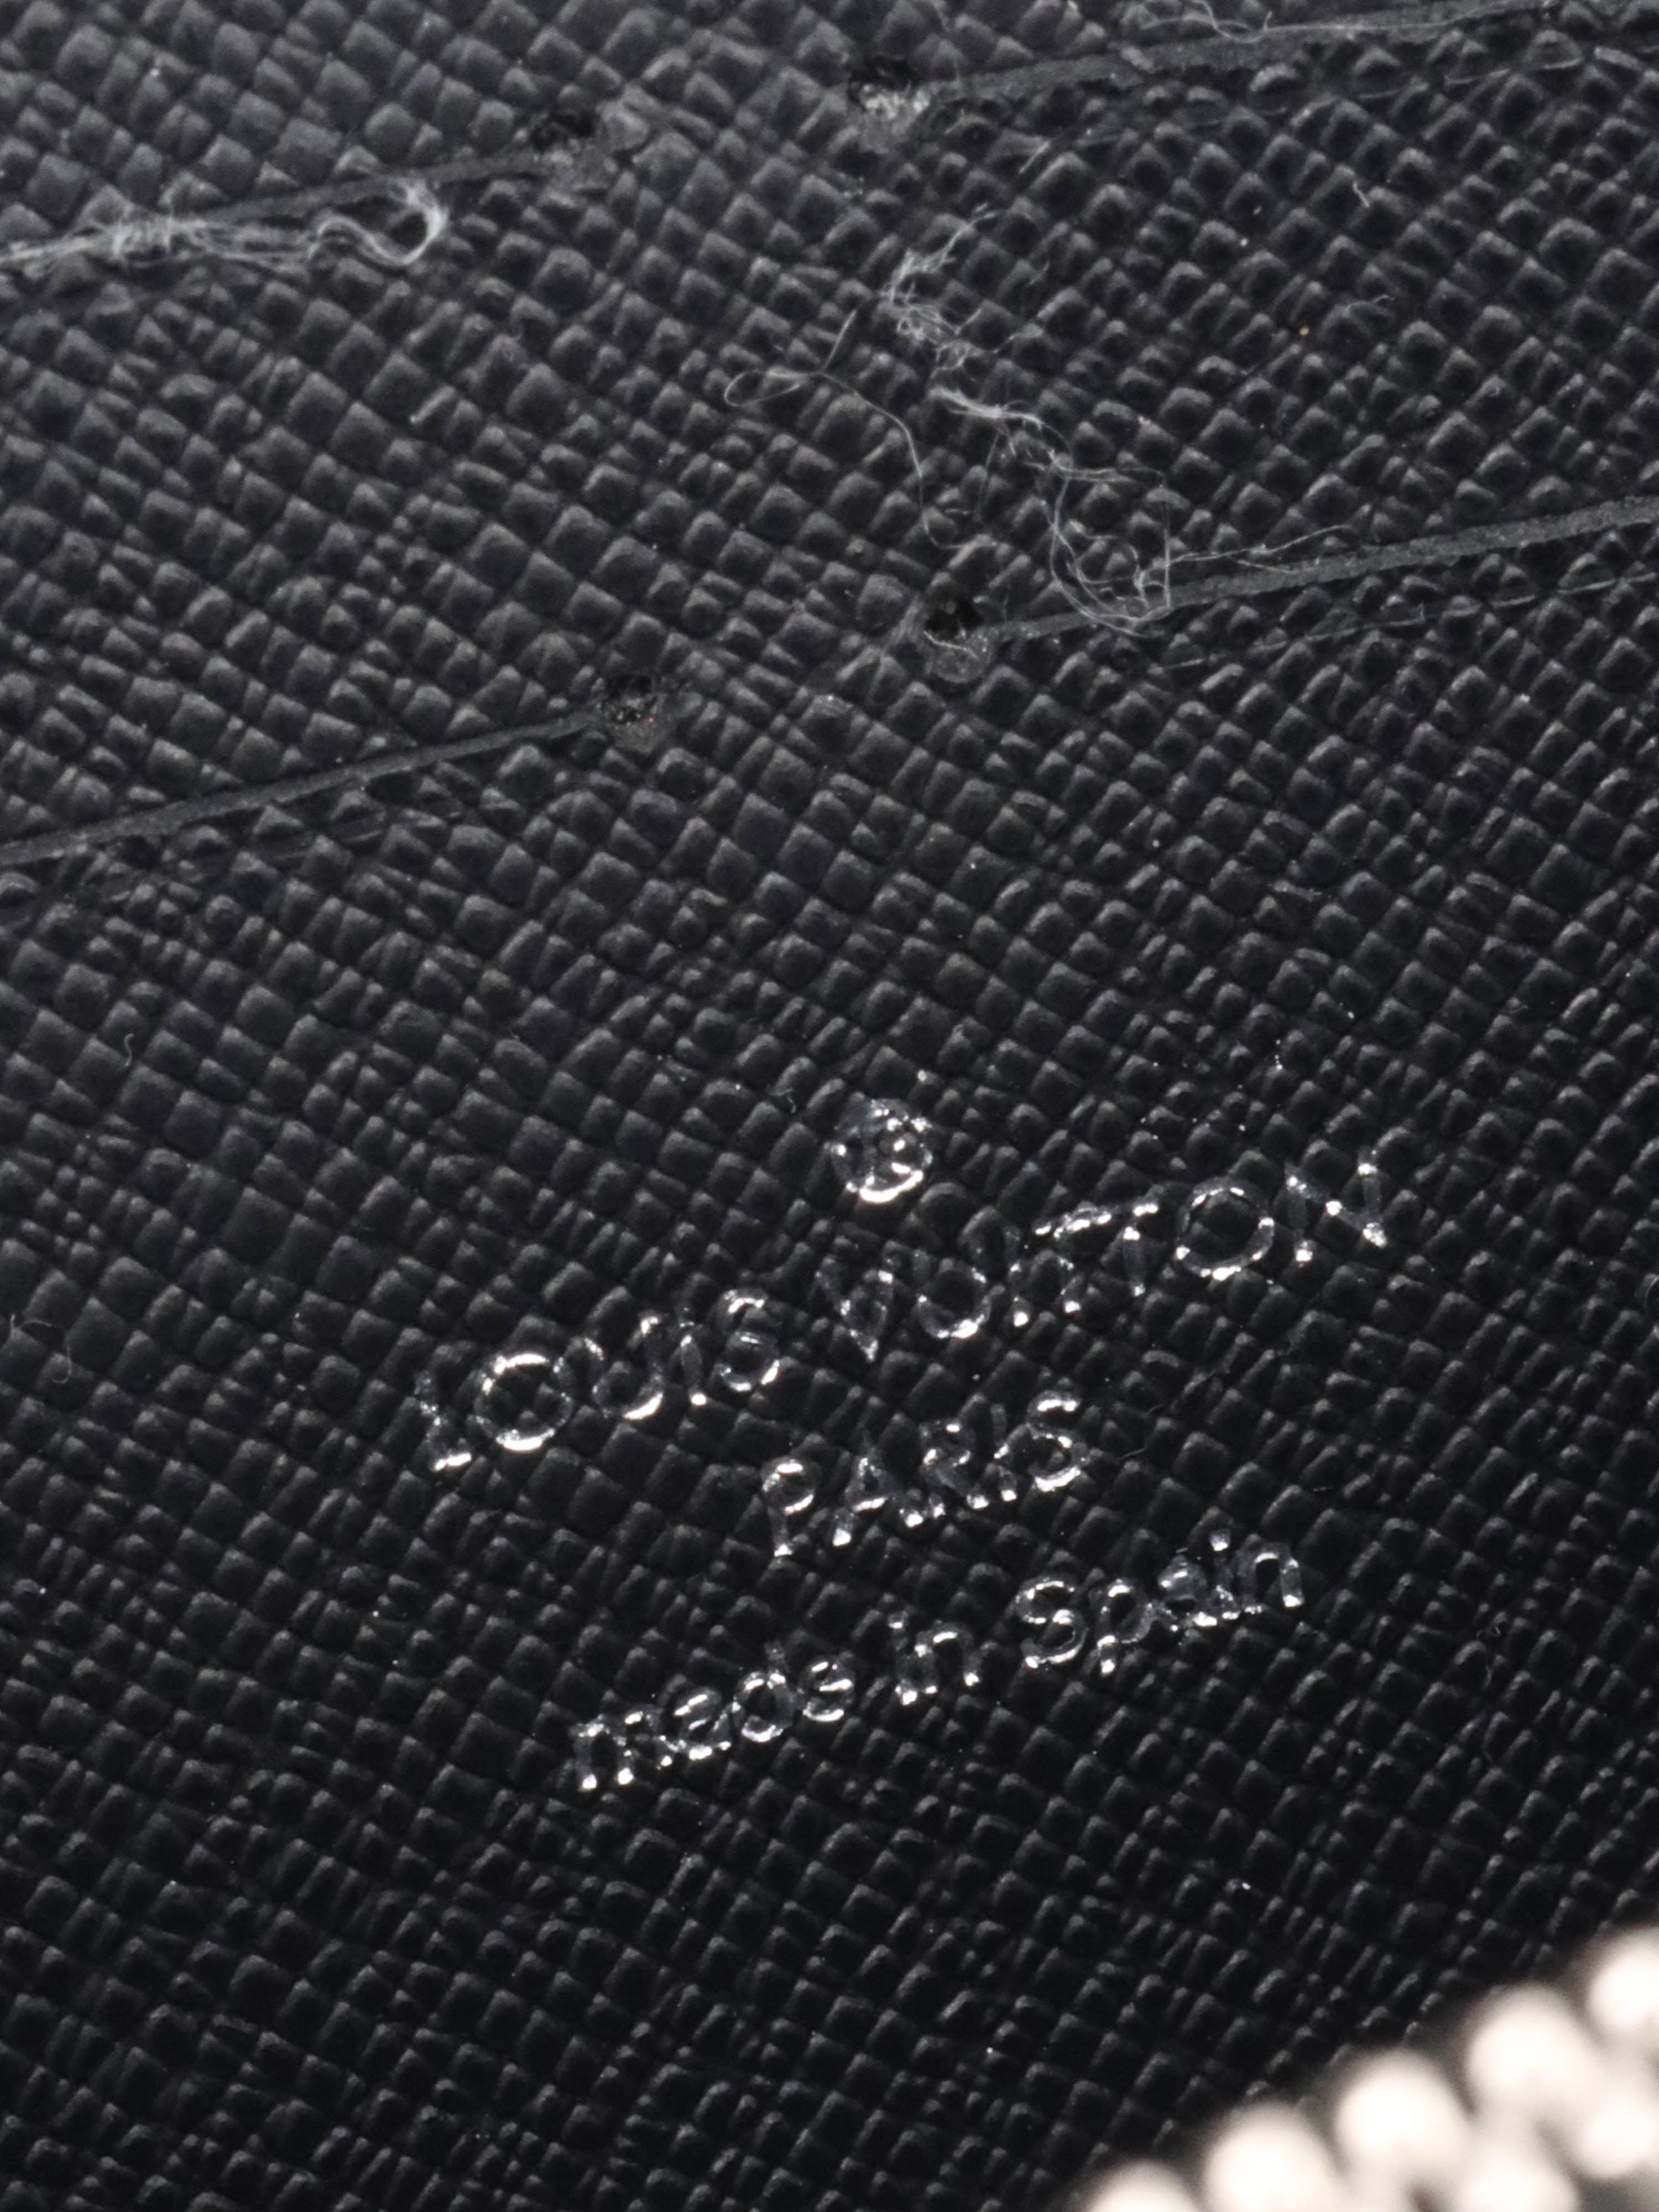 Louis Vuitton Black EPI Zipped Wallet.